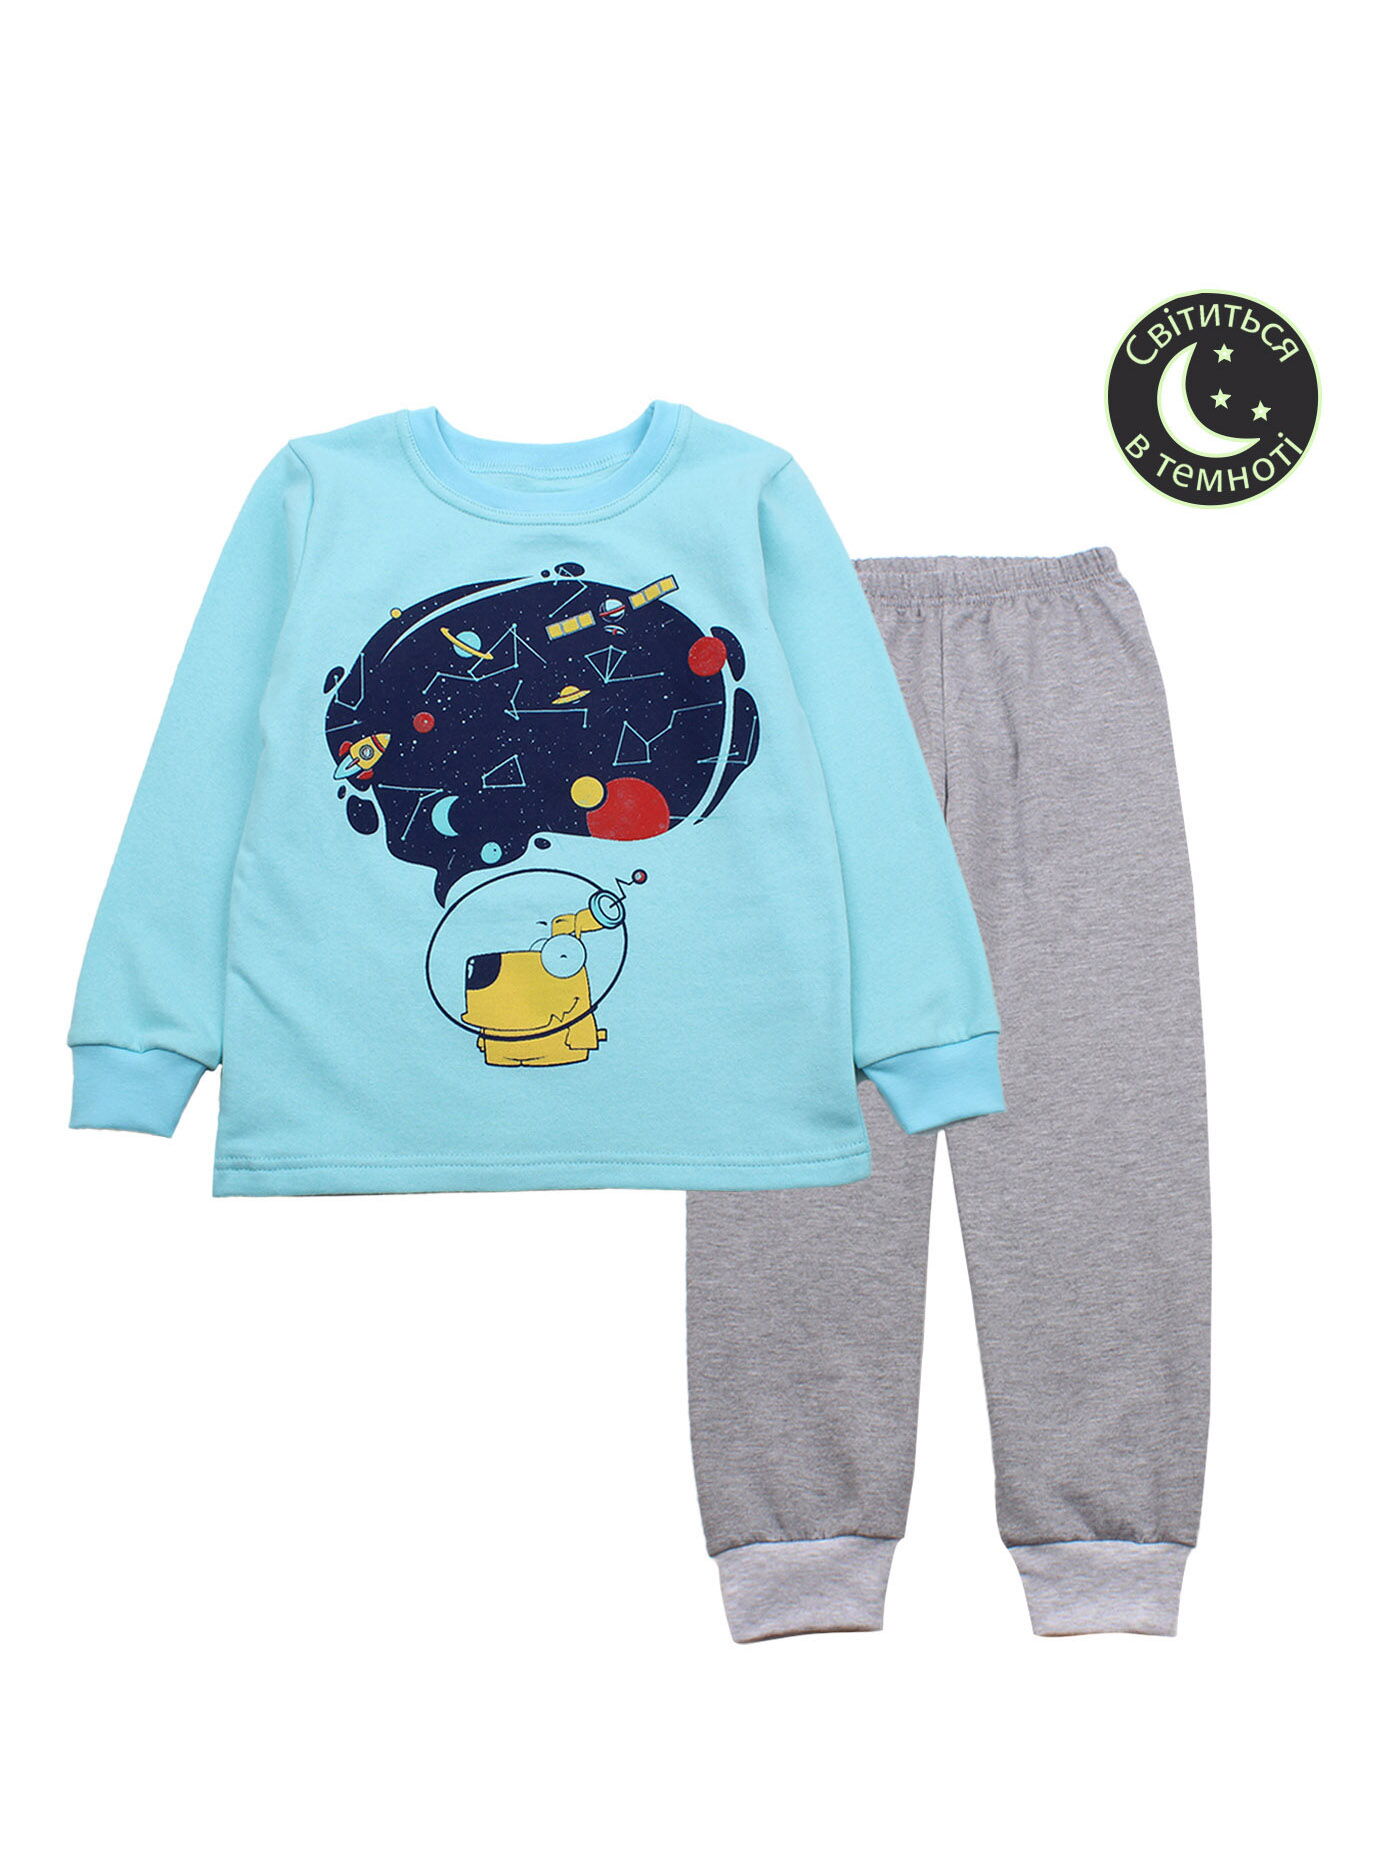 Утепленная пижама для мальчика Фламинго Космос бирюзовая 329-312 - цена